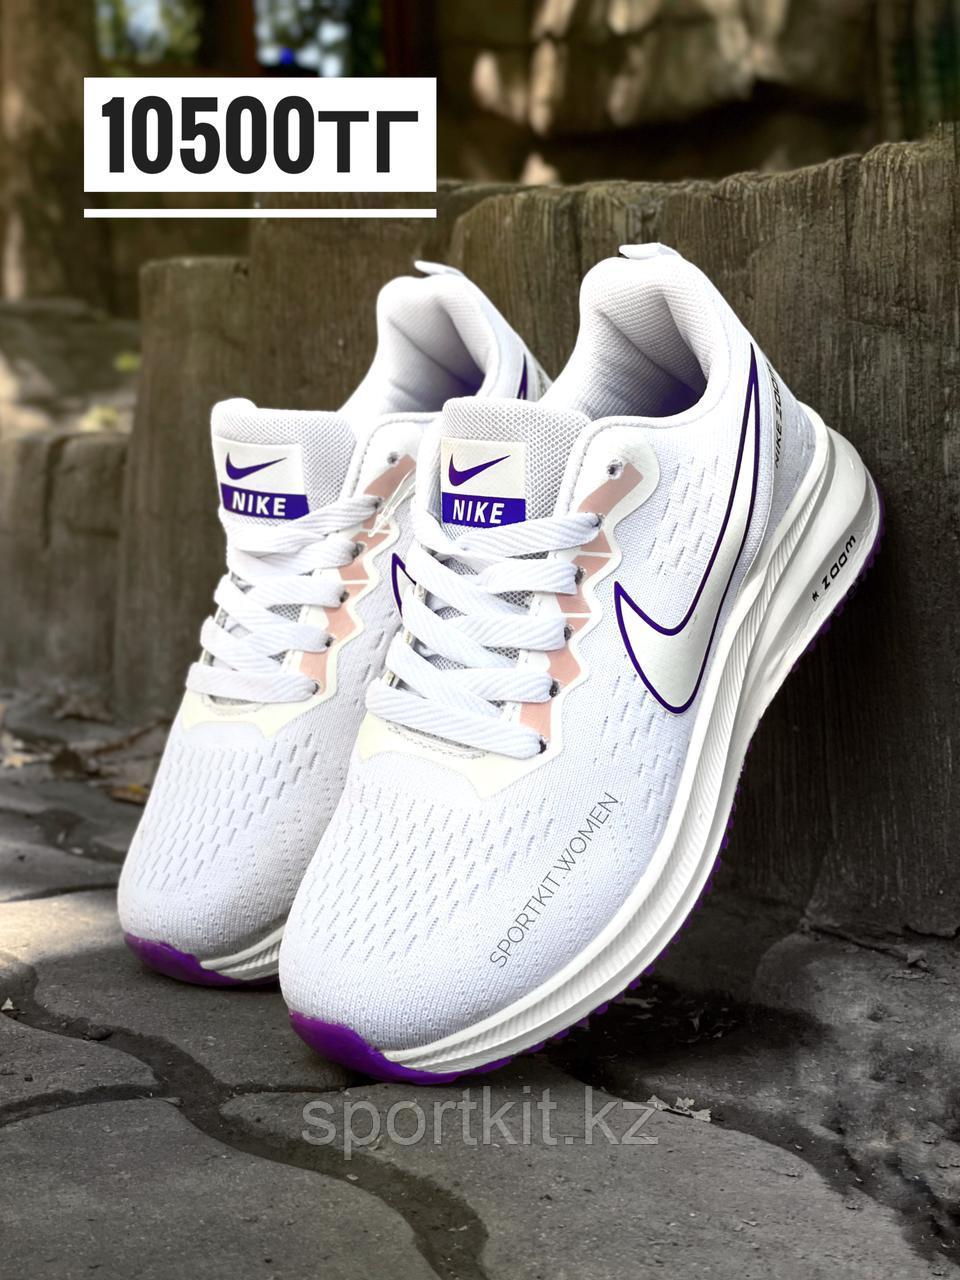 Крос Nike Air Zoom бел фиол (жен) 11121-1